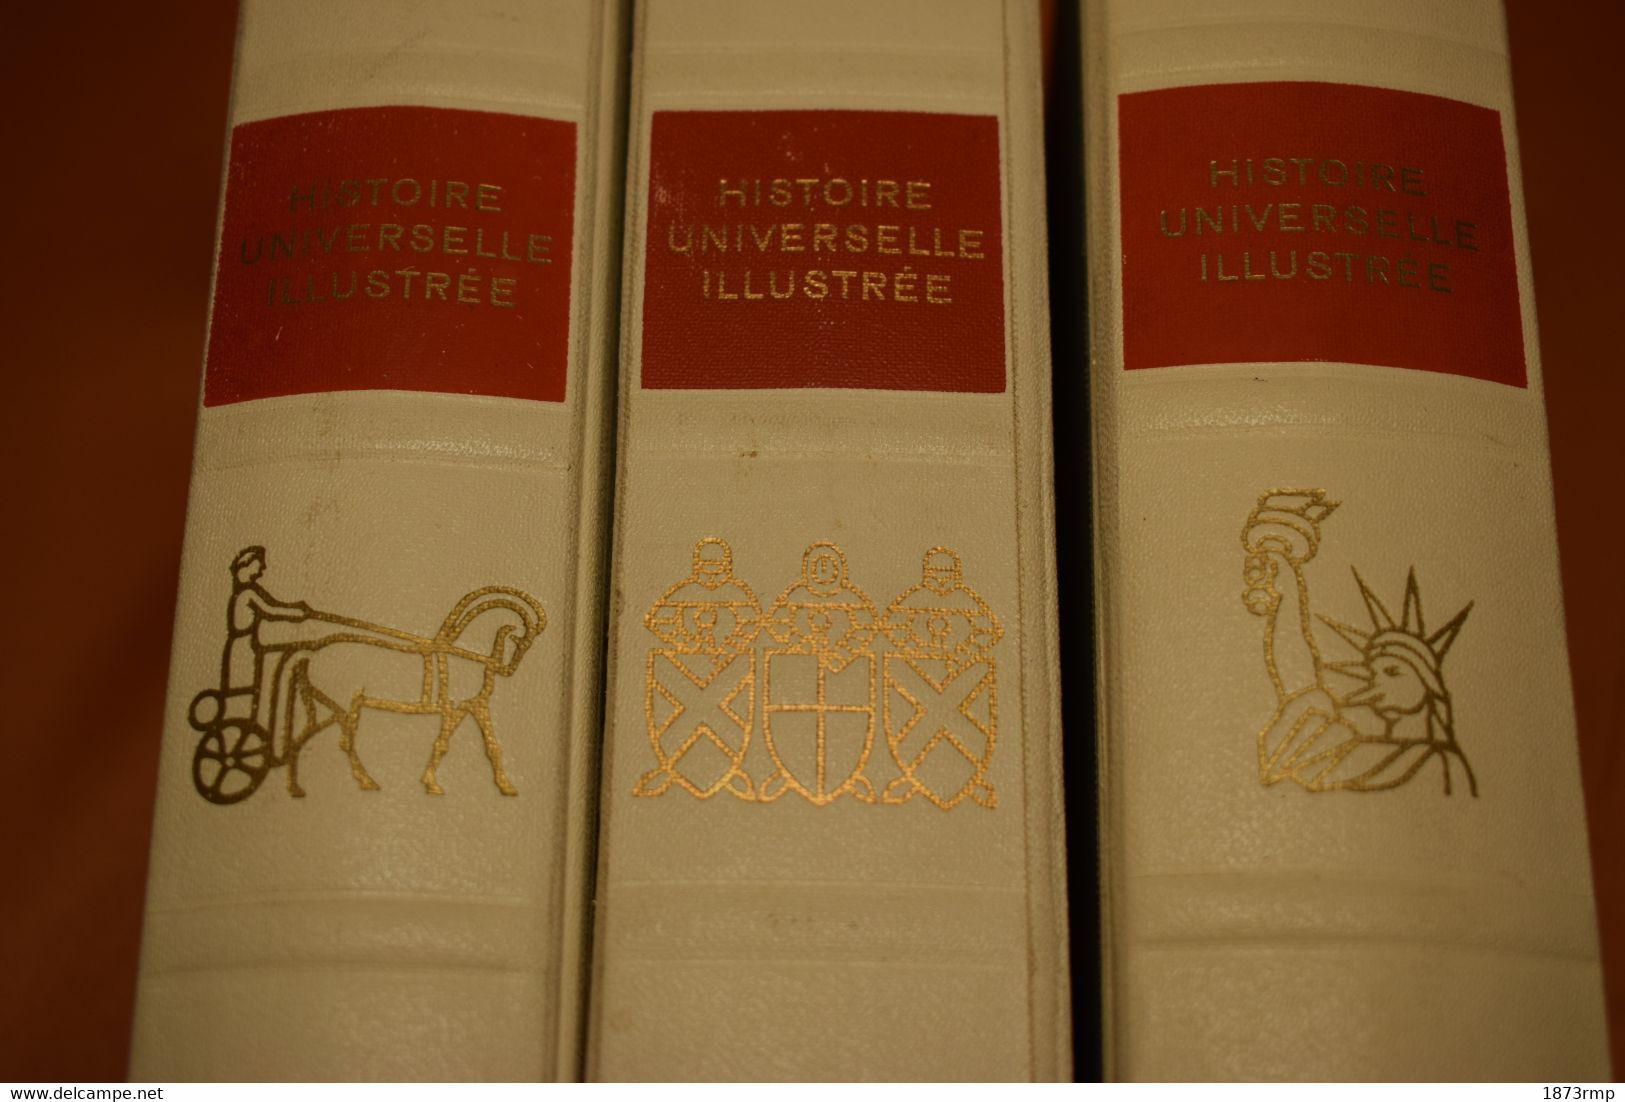 HISTOIRE UNIVERSELLE ILLUSTRÉE TROIS VOLUMES - Encyclopaedia